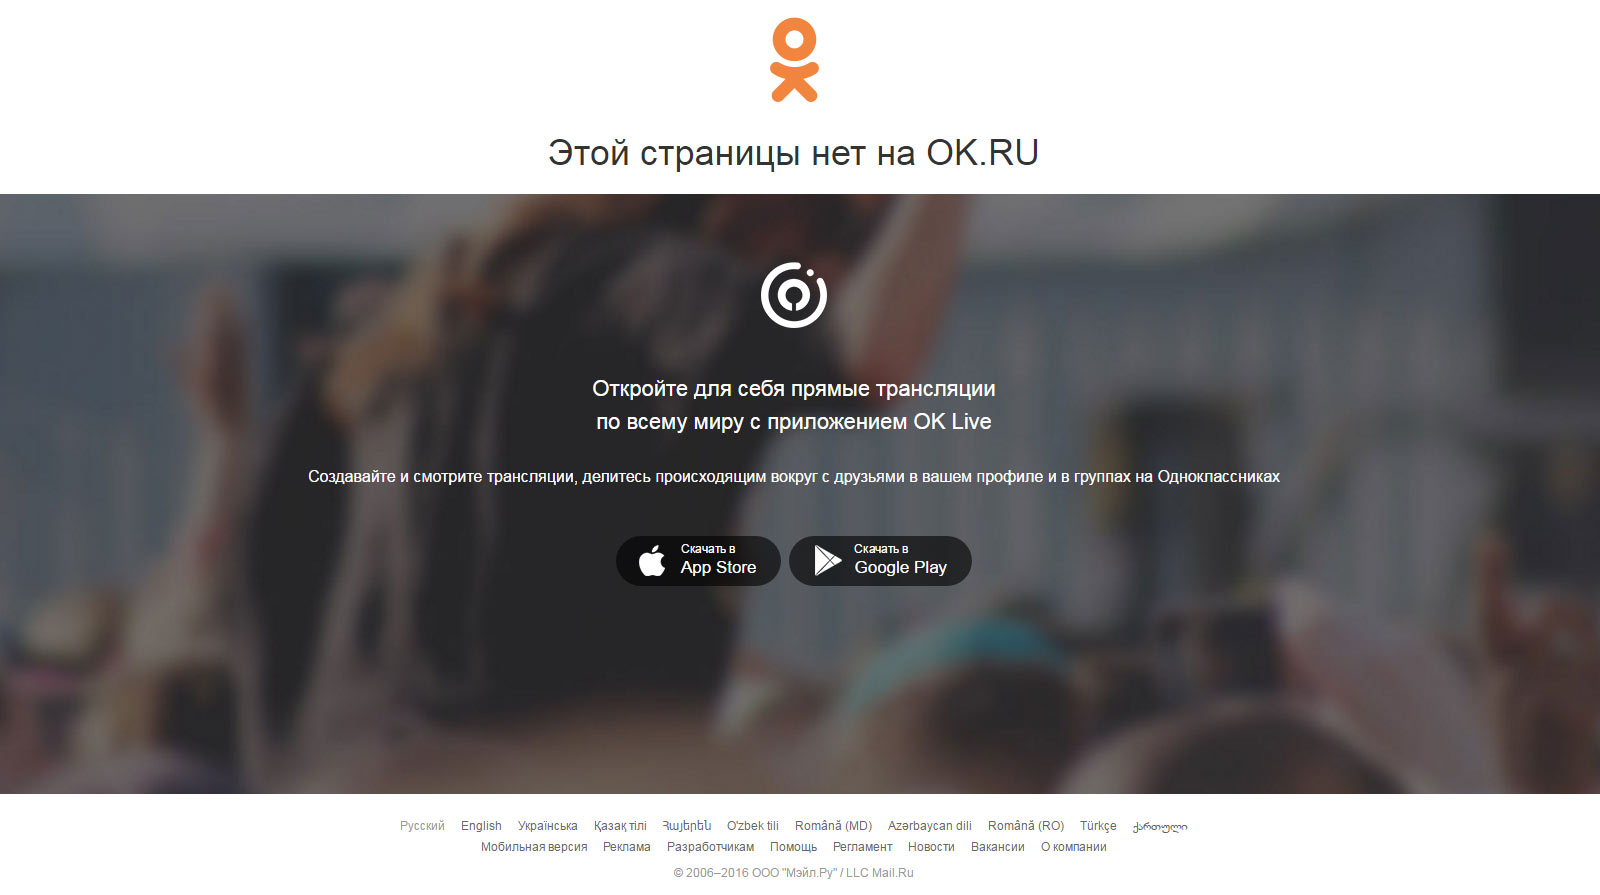 Страница 404 социальной сети Одноклассники